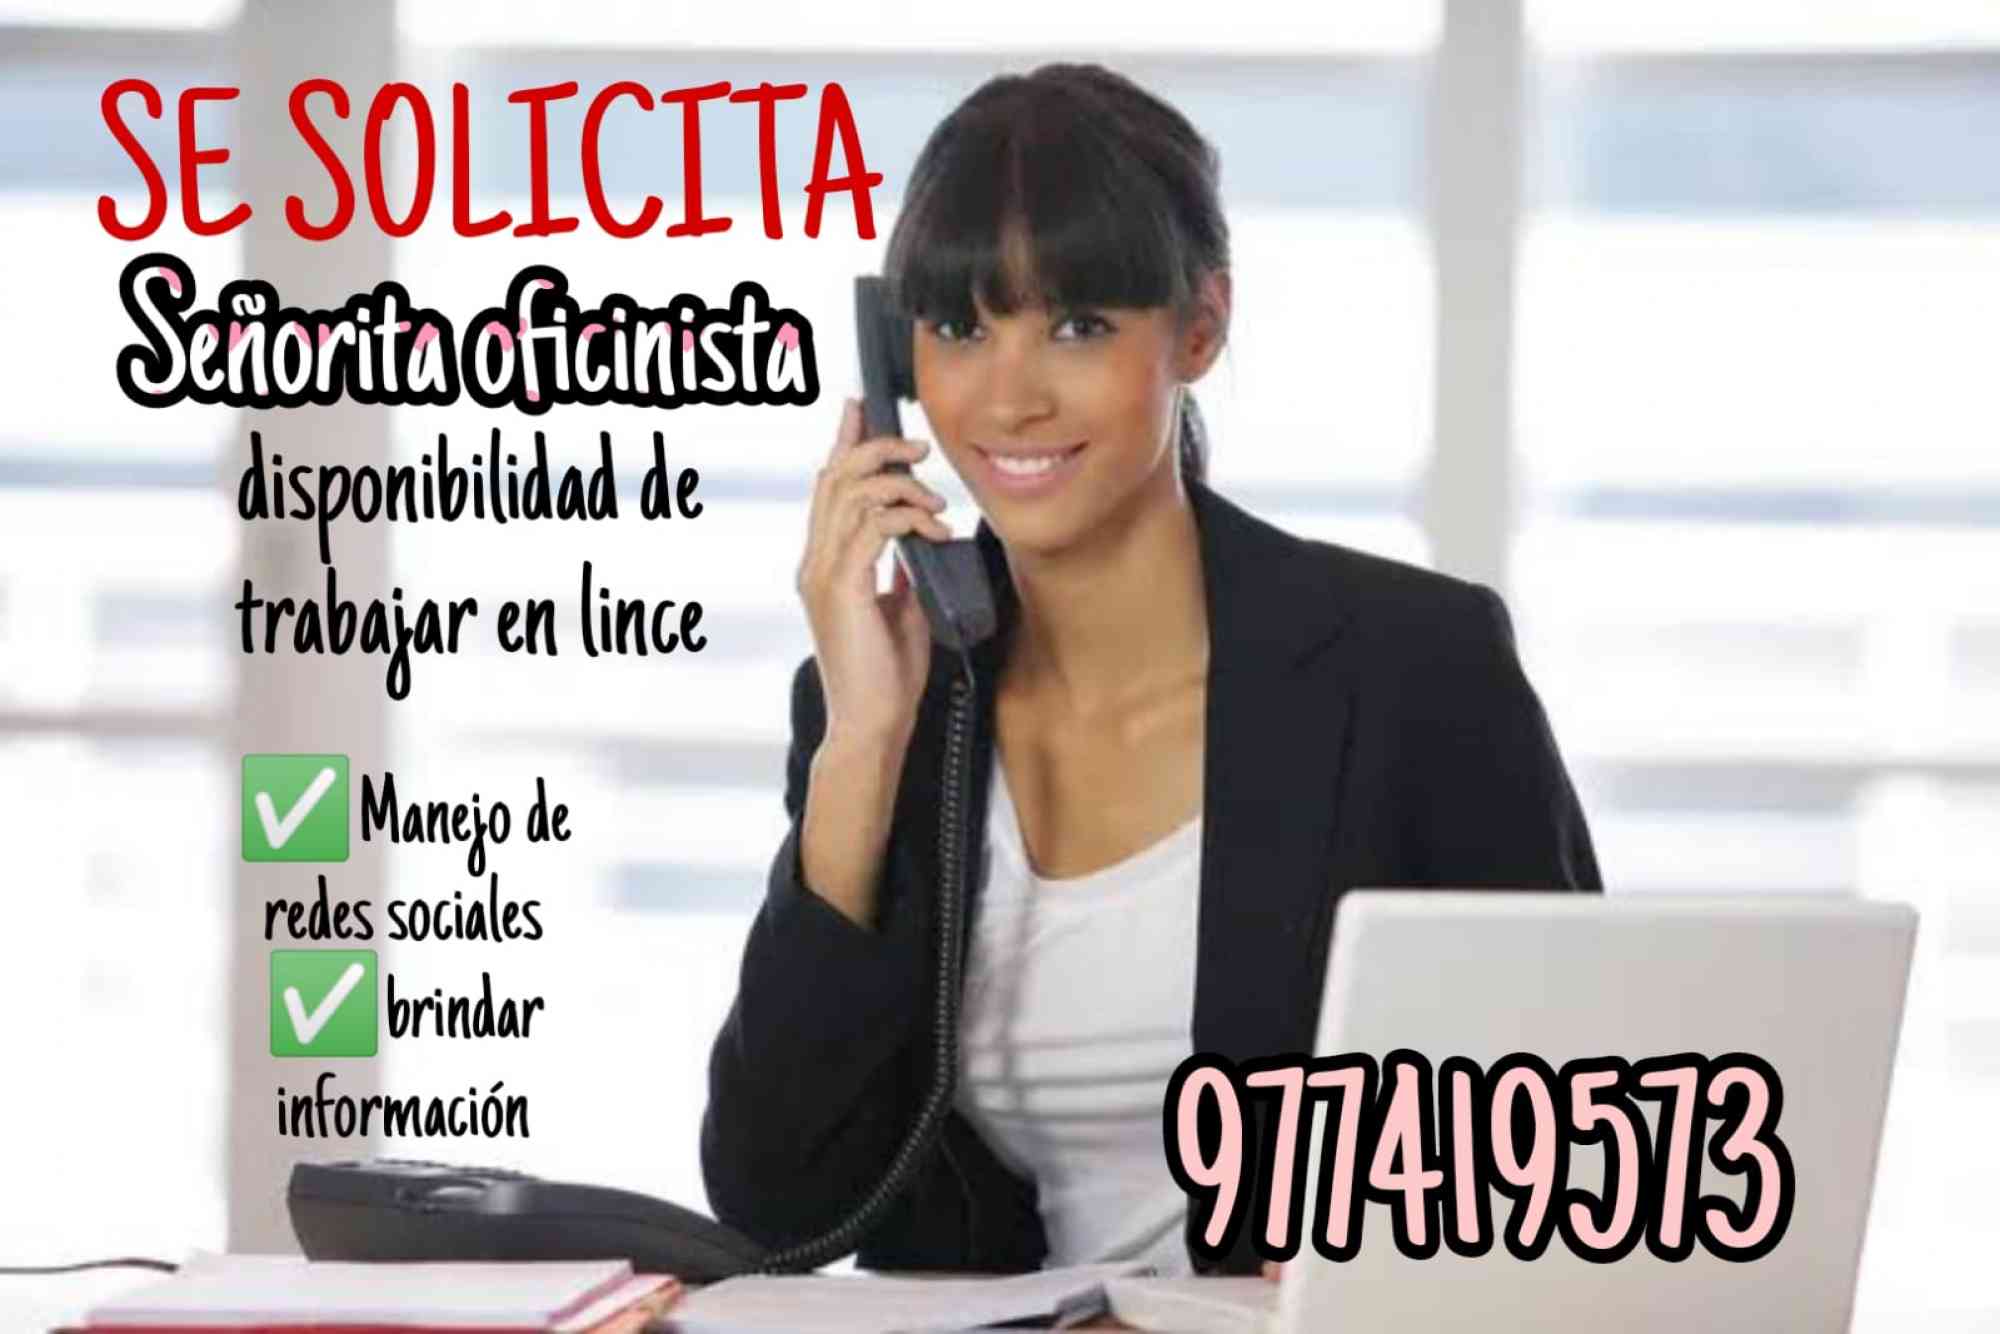 Bolsa de trabajo y anuncios de empleos en Perú., SE REQUIERE SEÑORITA PARA OFICINA